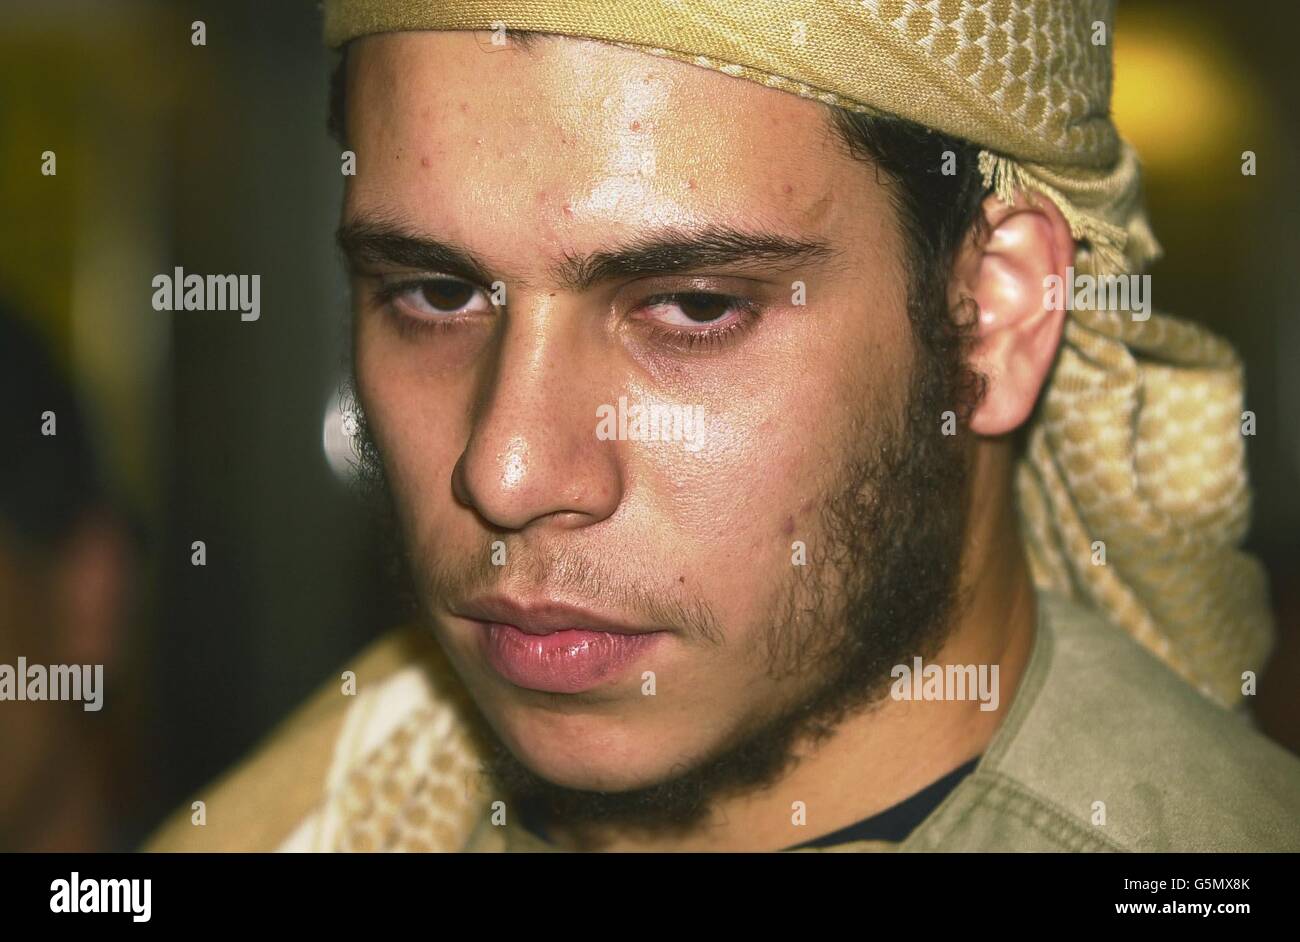 Mohammed Mustafa Kamel, fils du religieux de la mosquée du parc de Finsbury, Sheikh Abu Hamza al-Masri, arrive à l'aéroport de Londres Heathrow. Kamel a été reconnu coupable de complot pour saboter des sites économiques et touristiques au Yémen en août 1999, alors qu'il n'avait que 17 ans. * il est revenu à Londres après sa libération de la prison de Mansoura au Yémen où il avait purgé une peine de trois ans. Banque D'Images